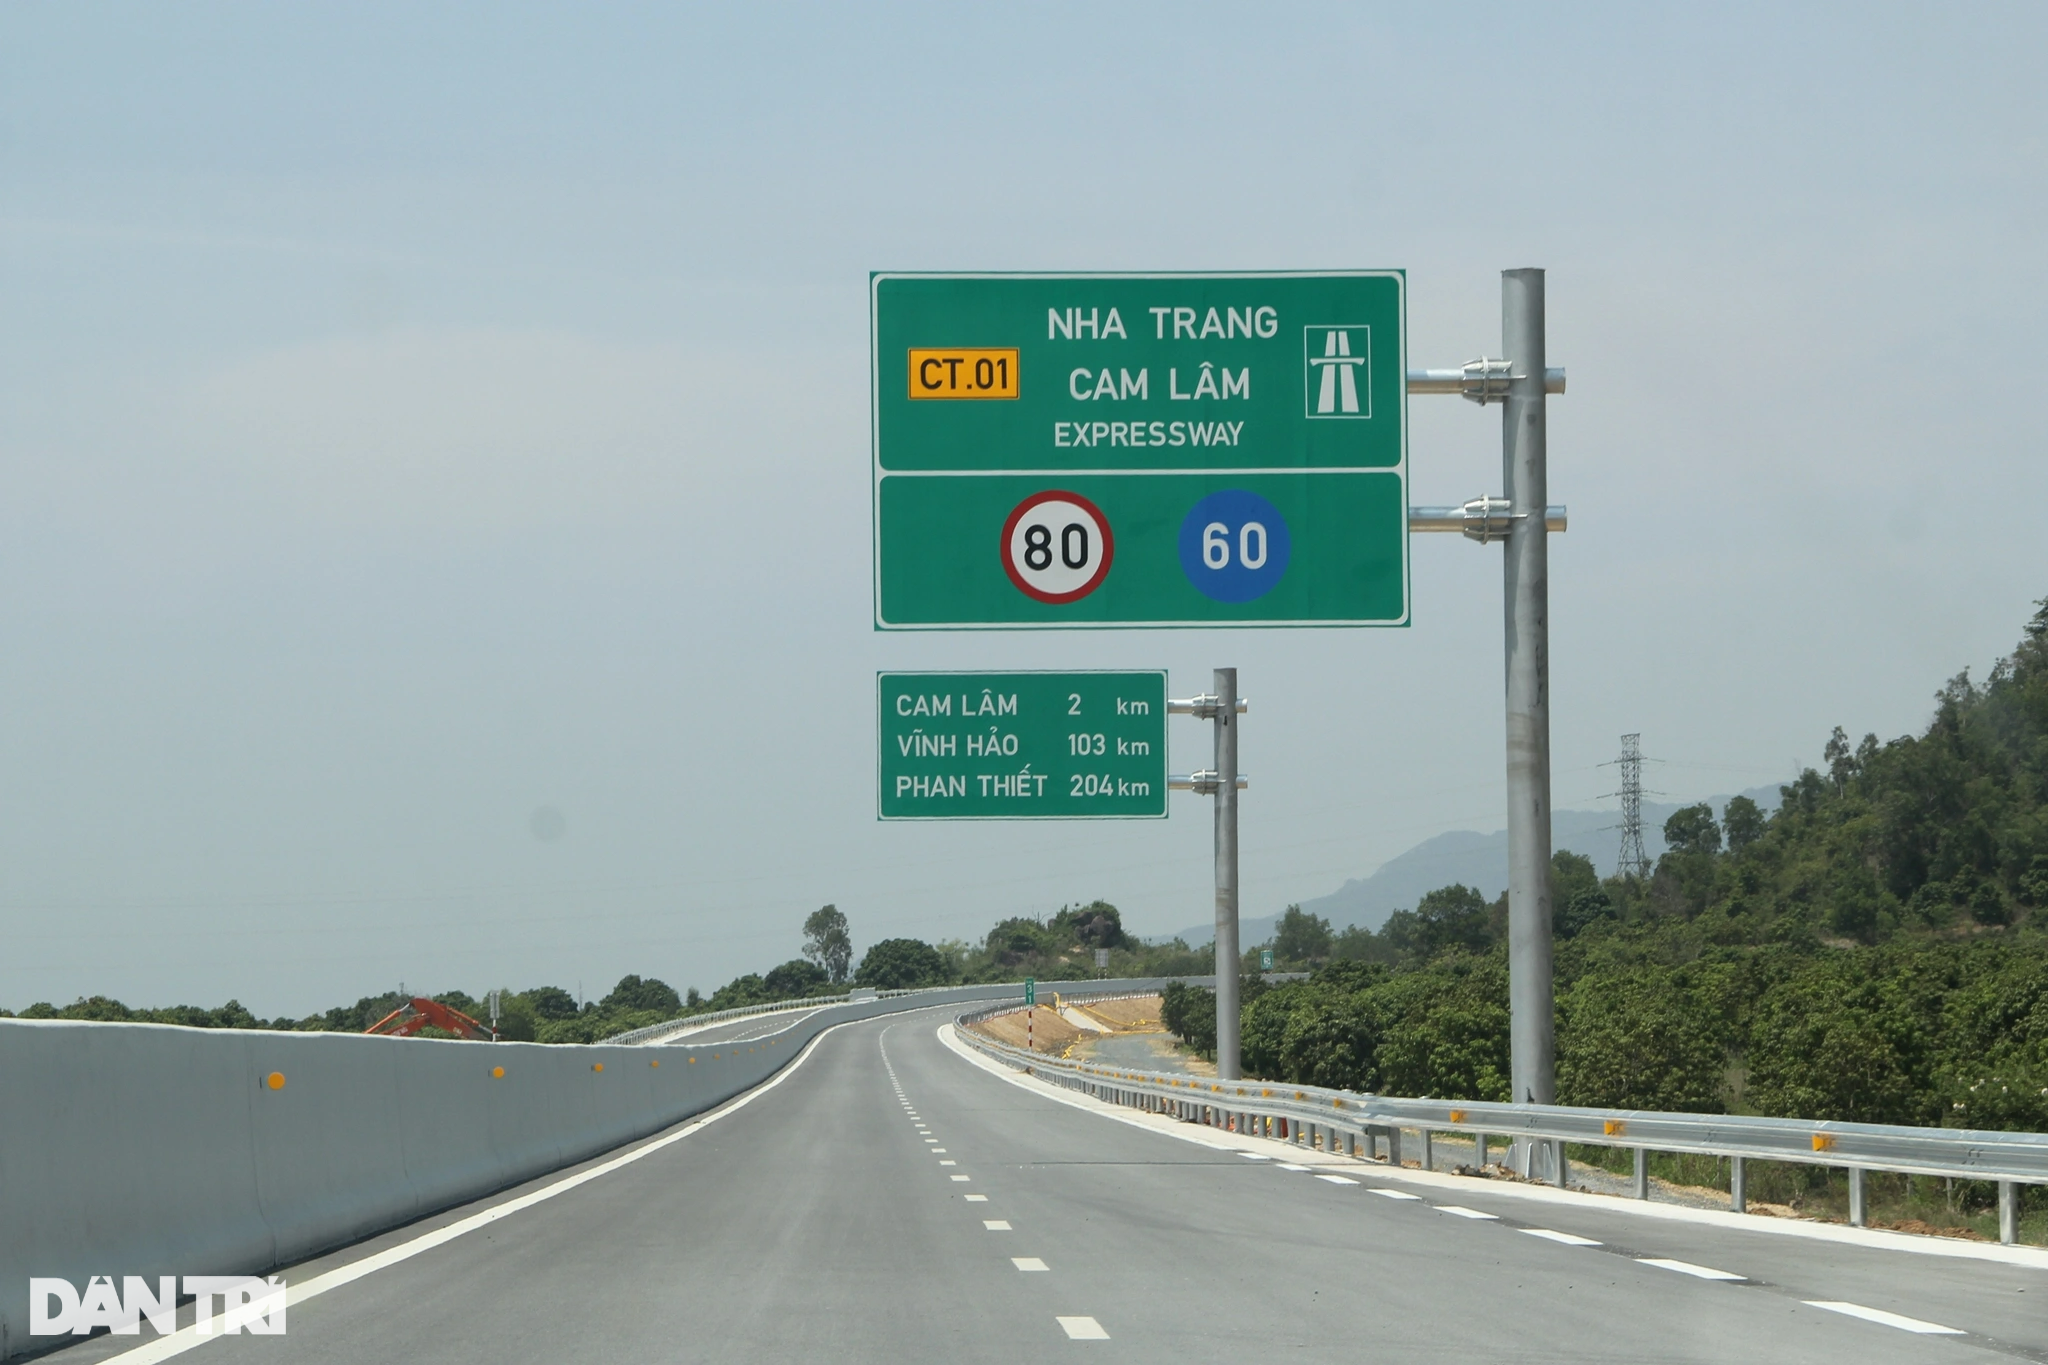 Những phương tiện đầu tiên lưu thông trên cao tốc Nha Trang - Cam Lâm - 3